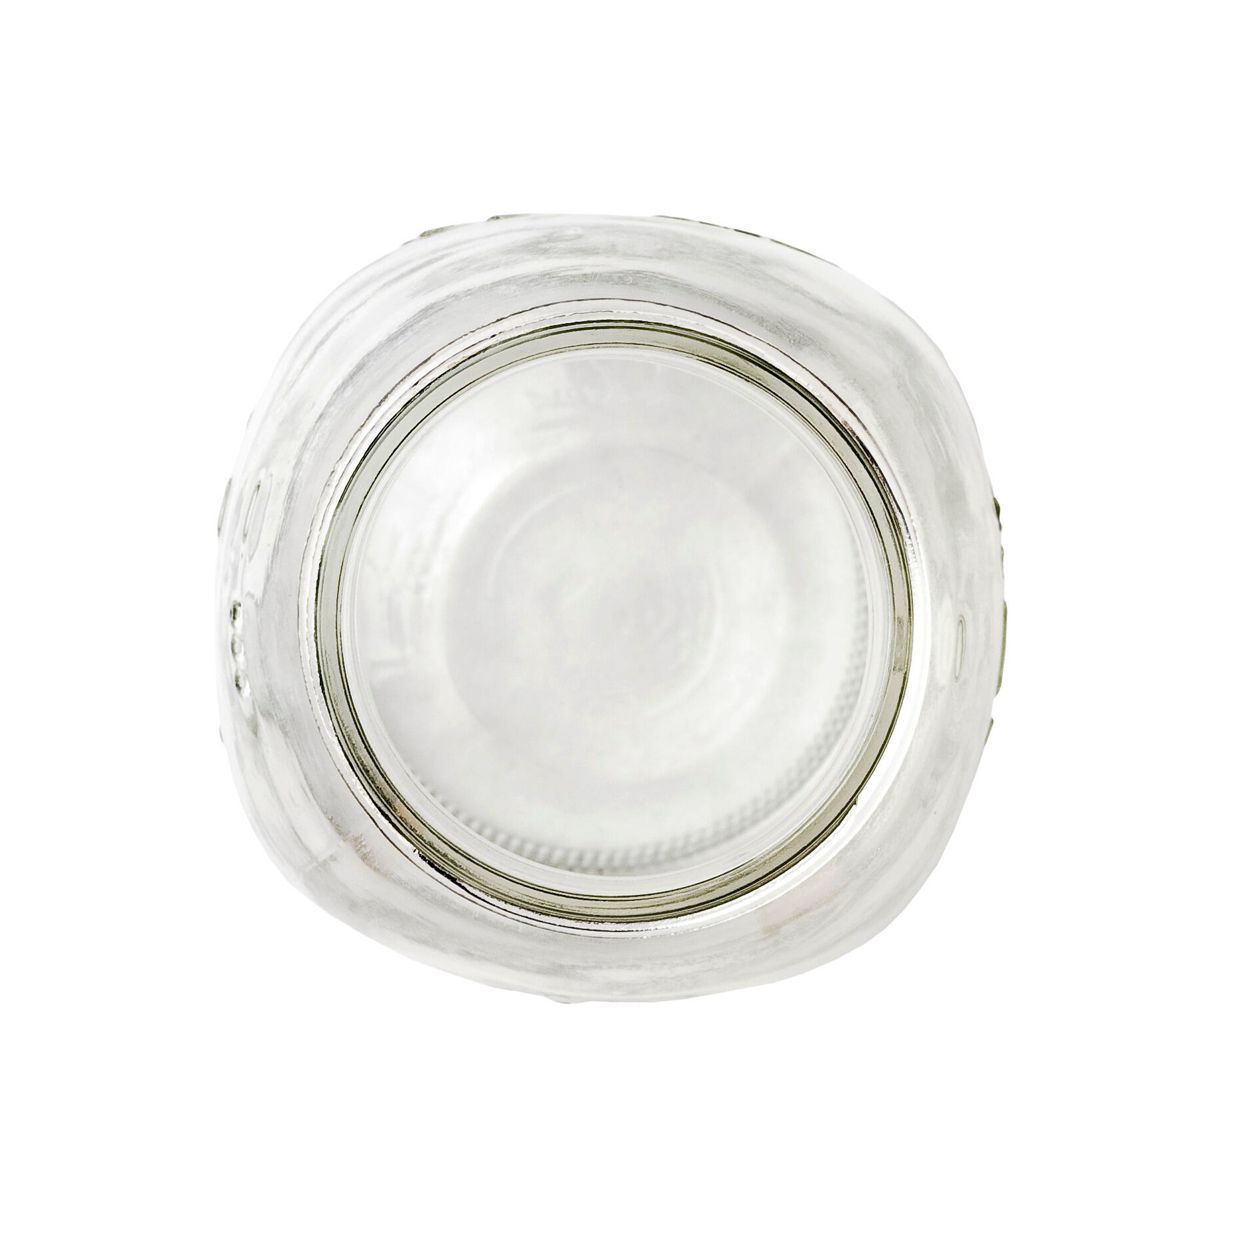 regular-mouth canning jar